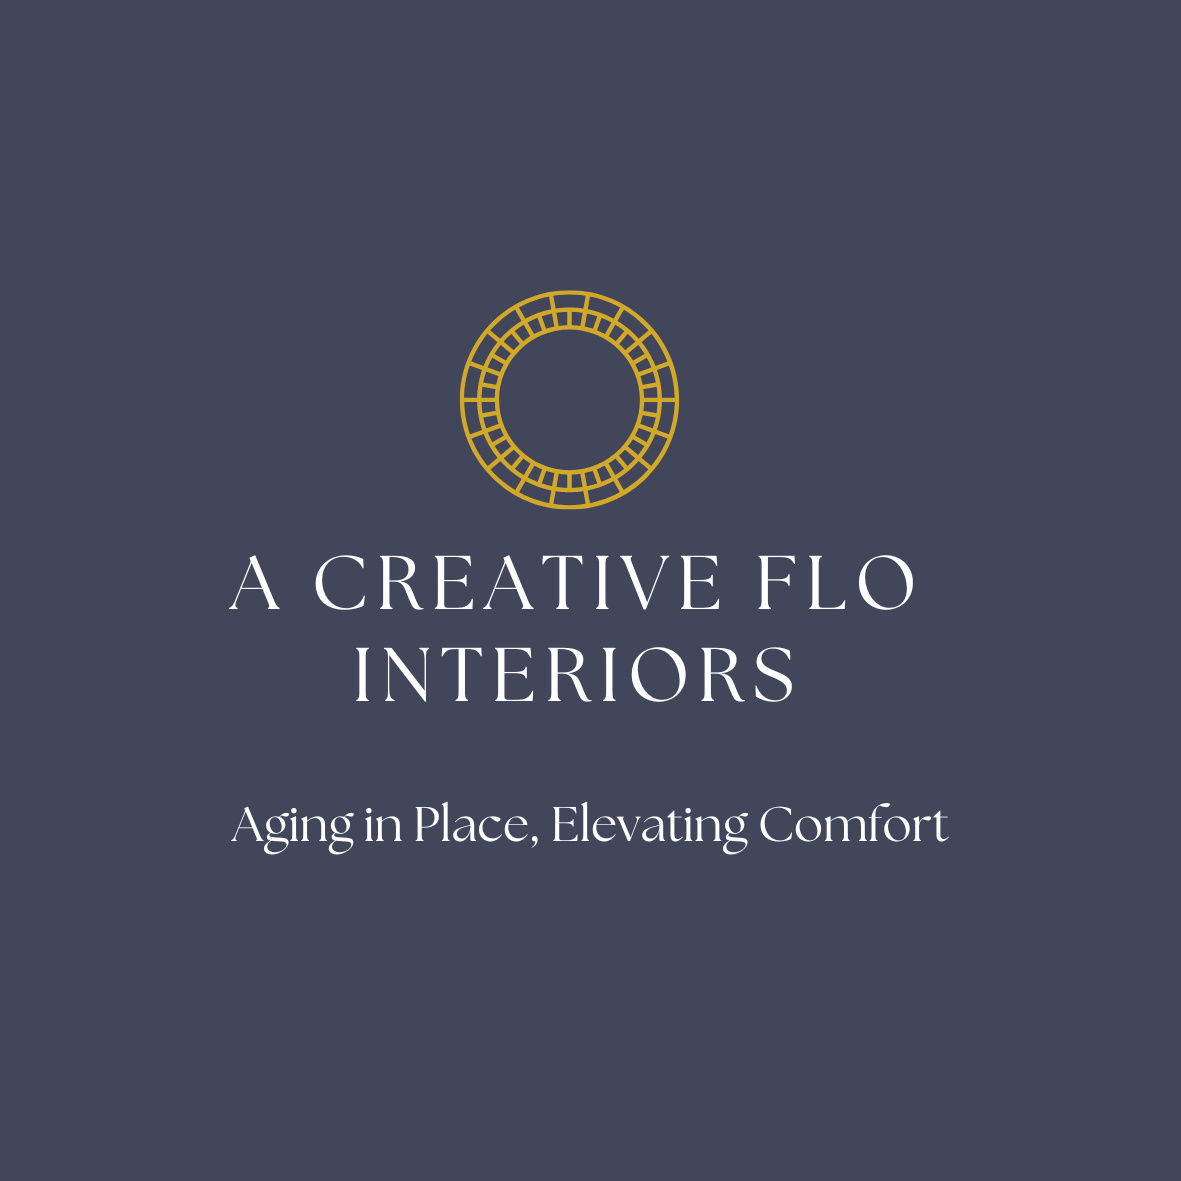 A Creative Flo Interiors